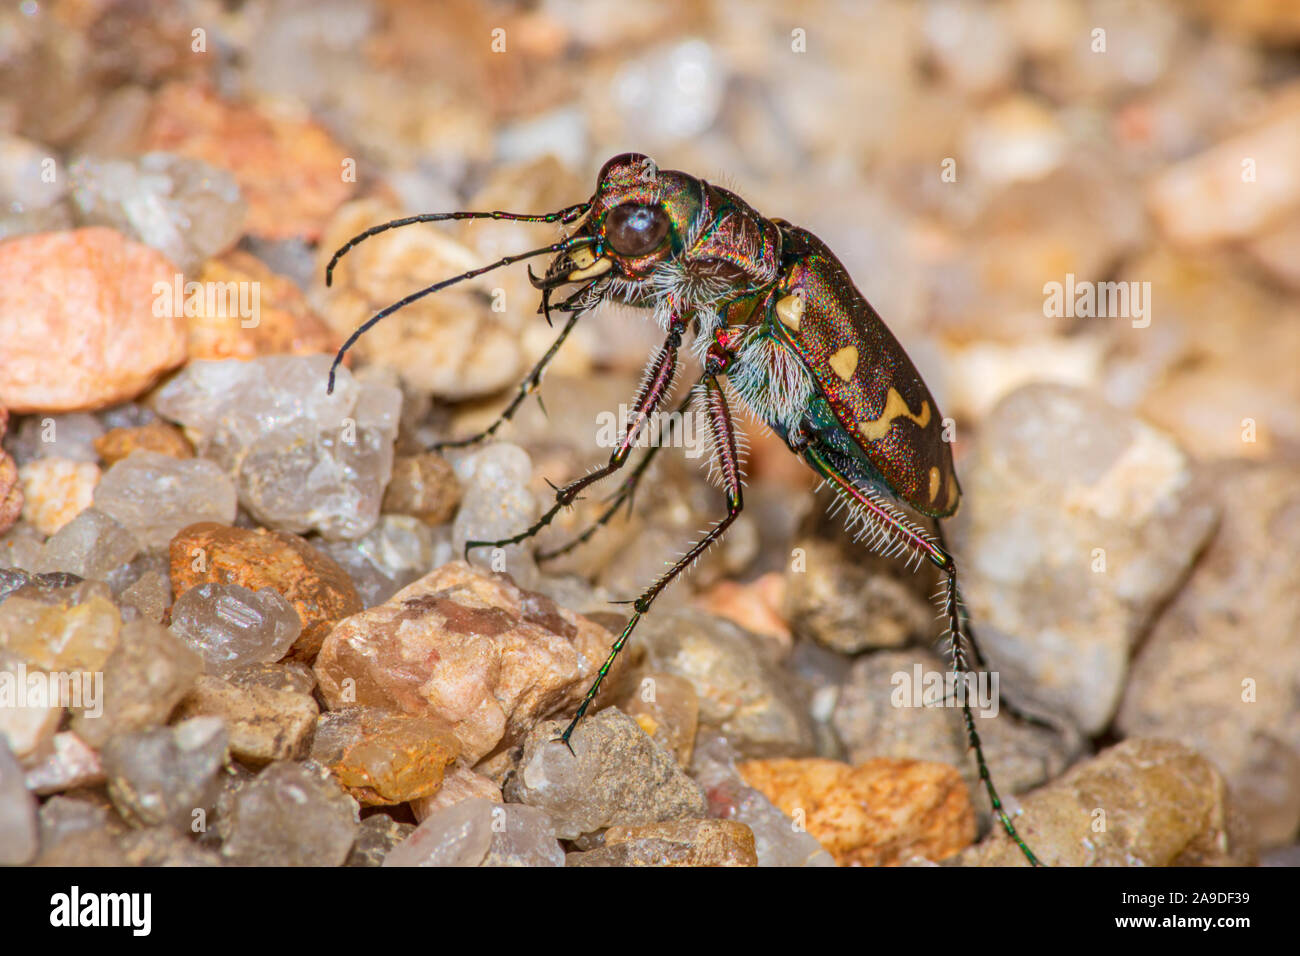 Repéré douze Tiger beetle (Cicindela duodecimguttata) chasse des proies dans la zone de sable près de East Plum Creek, Castle Rock Colorado nous. Photo prise en septembre. Banque D'Images